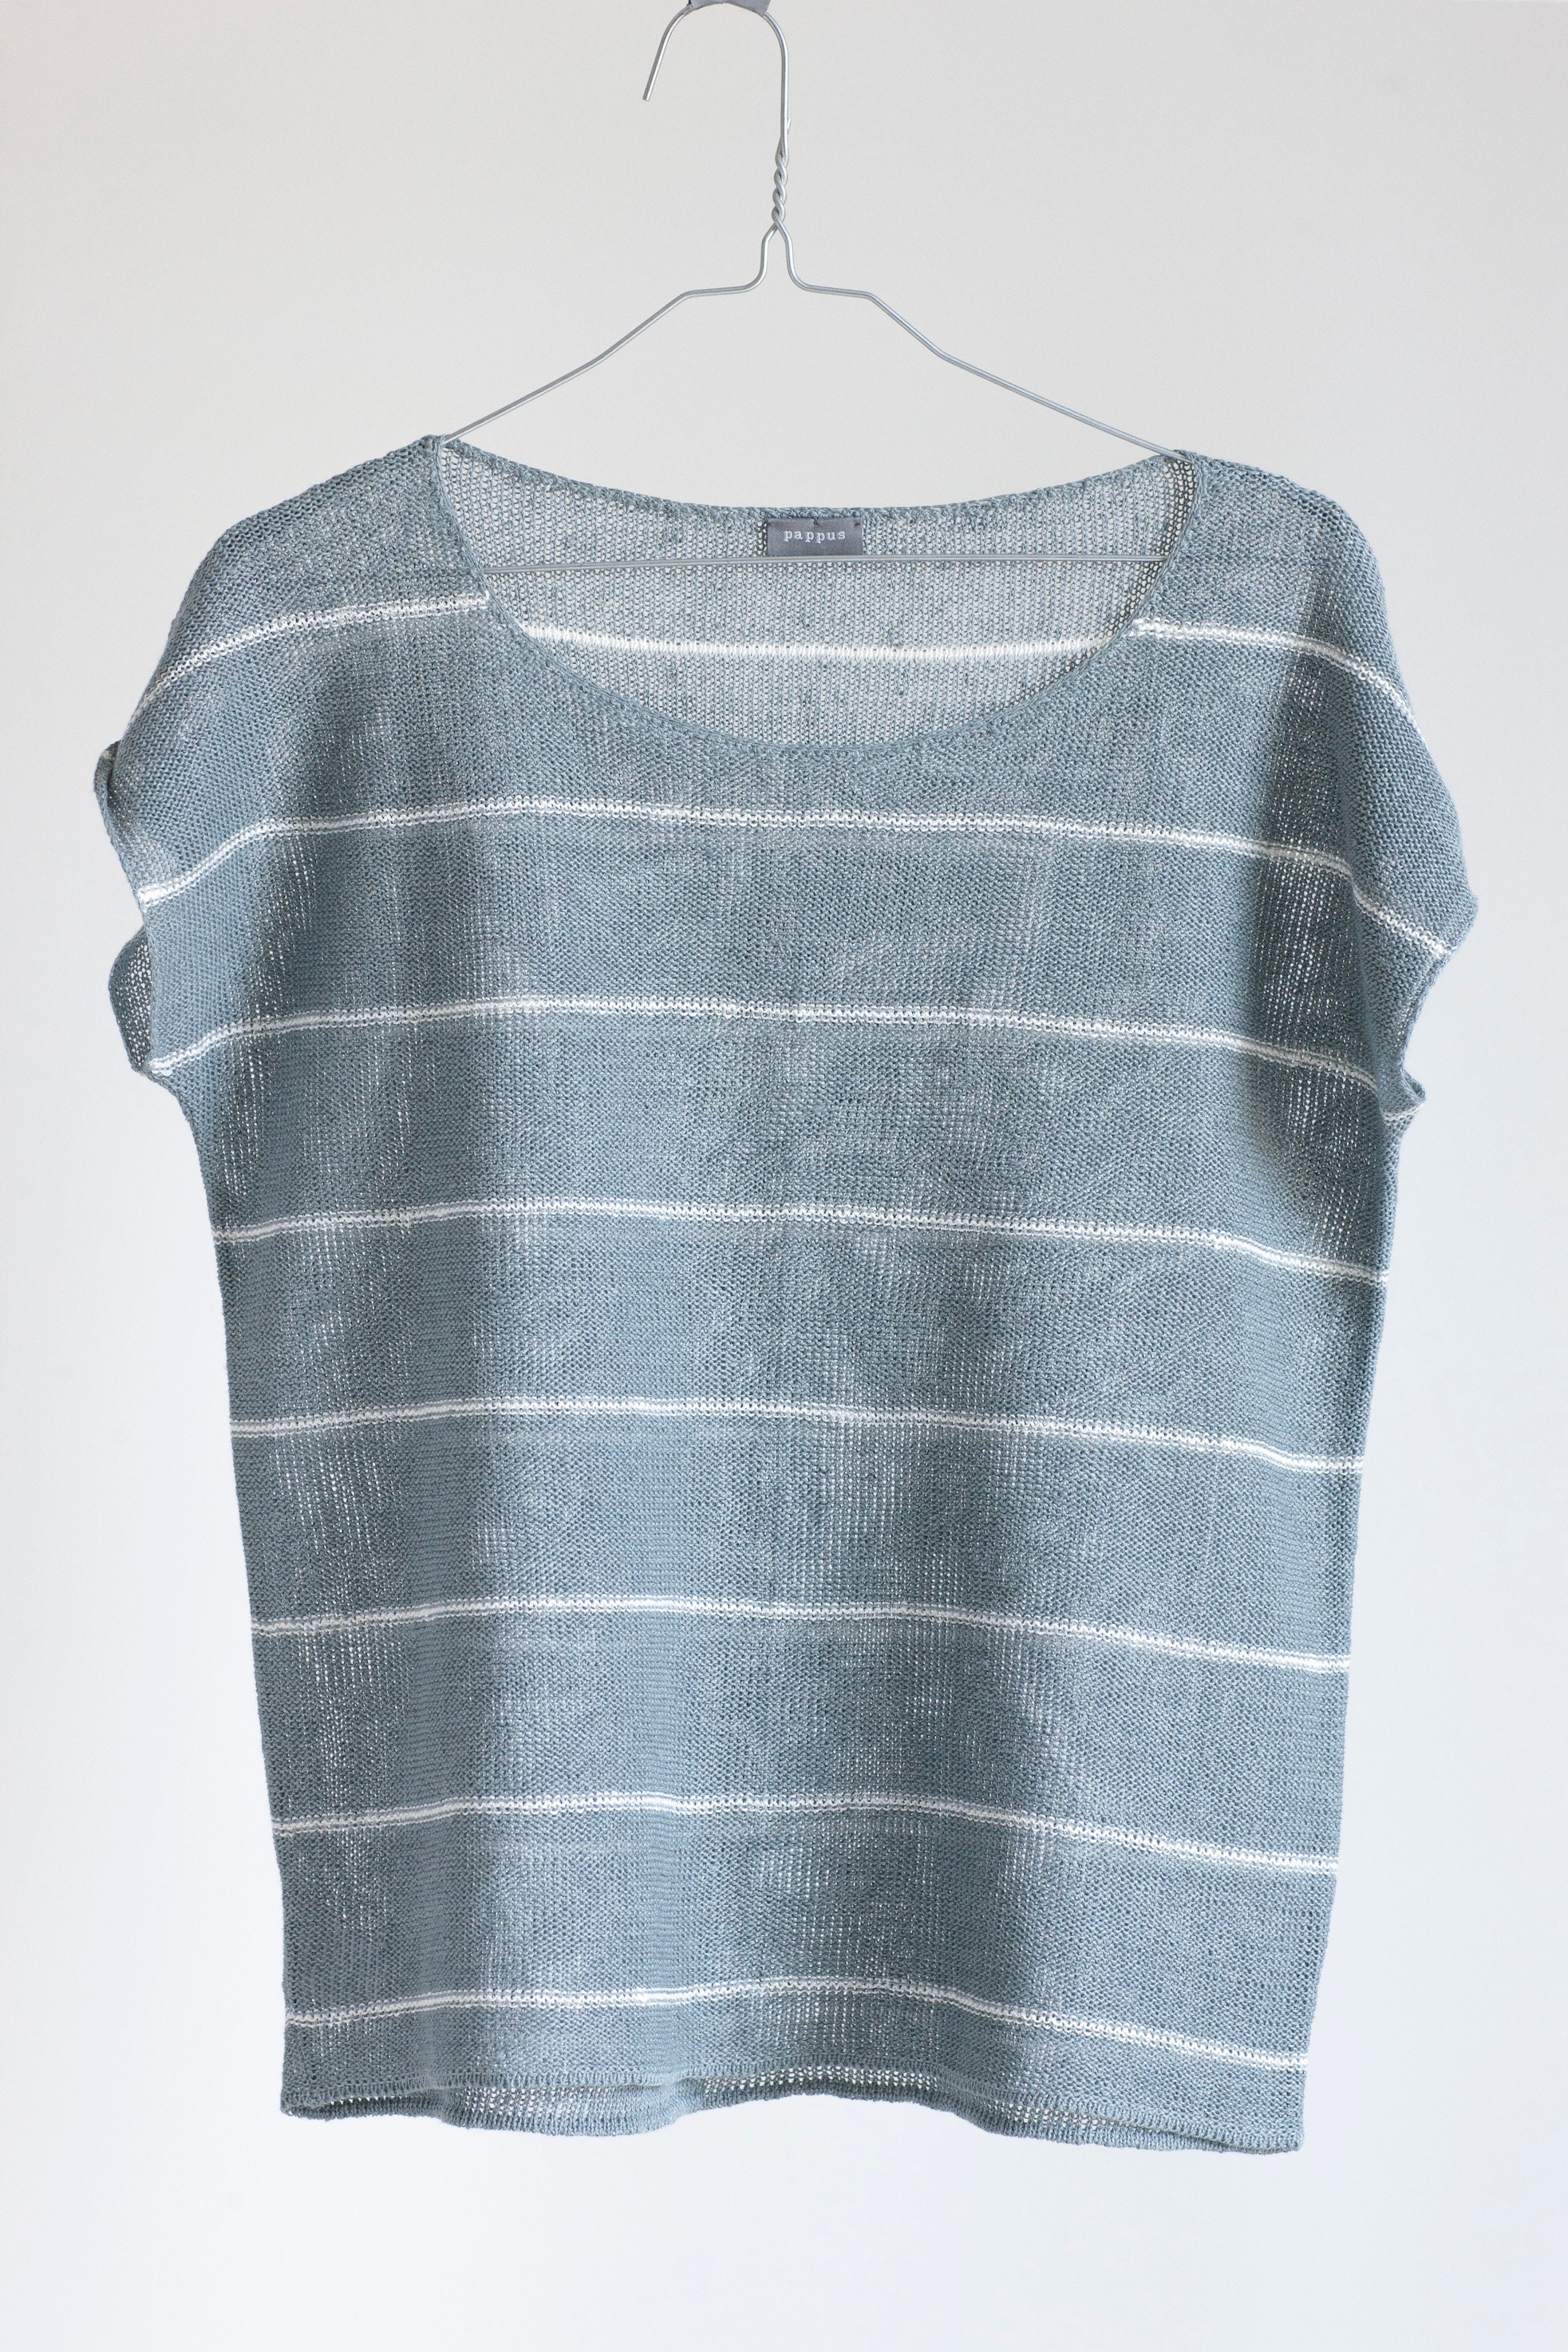 Linen T Shirt Knit Striped Linen Top Linen Summer Top Short - Etsy